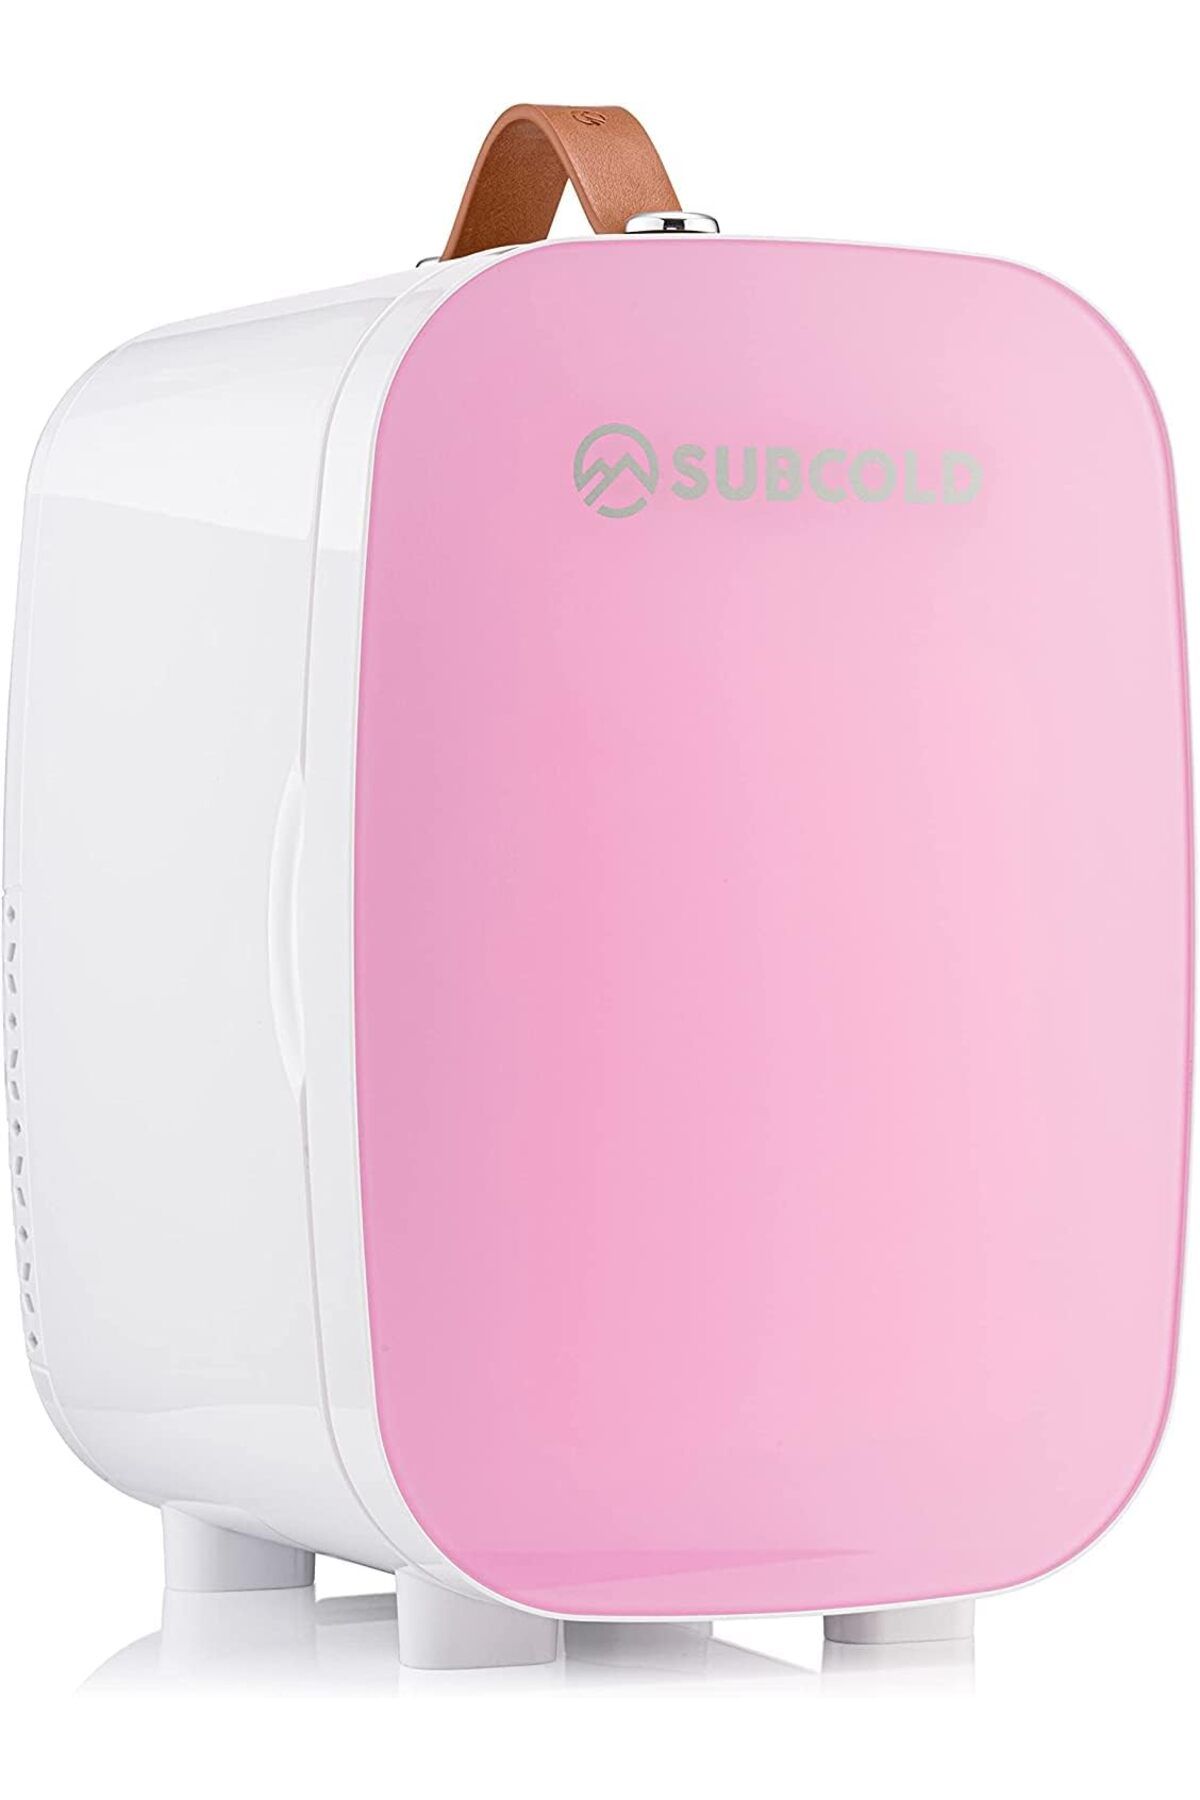 Subcold Pro6 Taşınabilir Lüks Mini Buzdolabı 6L Kozmetik, Kamp, Seyahat için AC ve Özel USB Güç Seçeneği